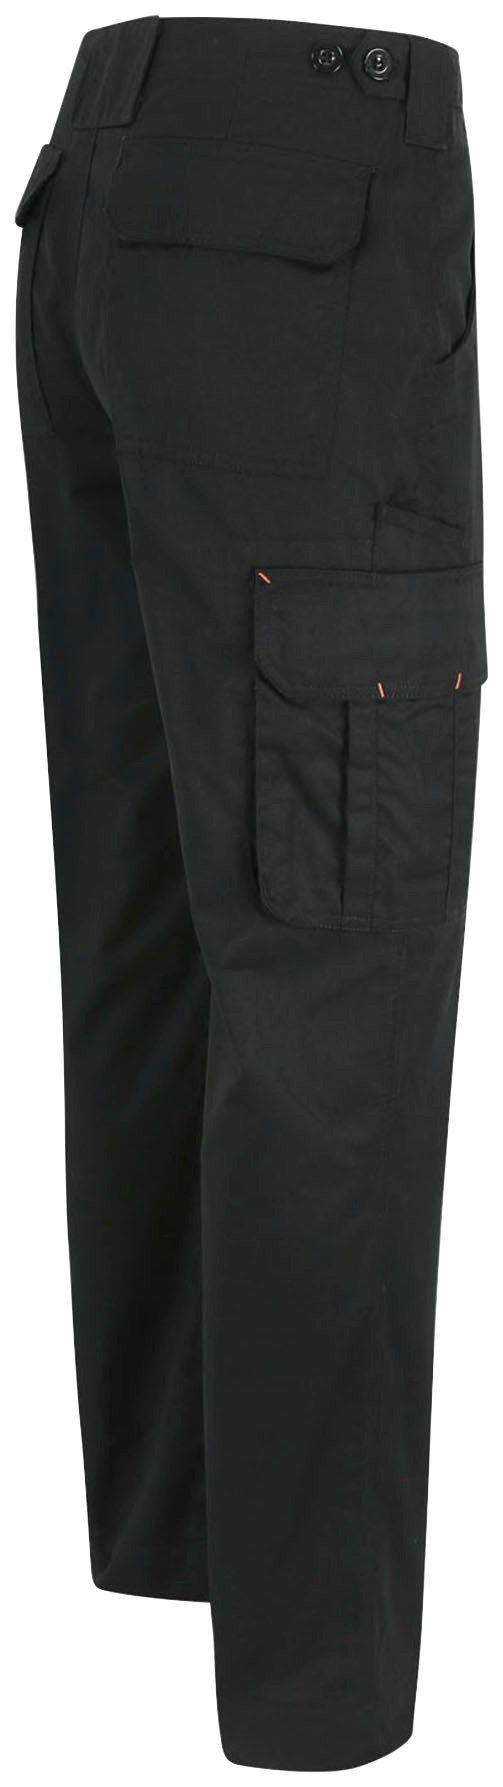 Herock Arbeitshose Thor Hose Wasserabweisend, einstellbarer leicht, Farben 7 Bund, schwarz viele Taschen